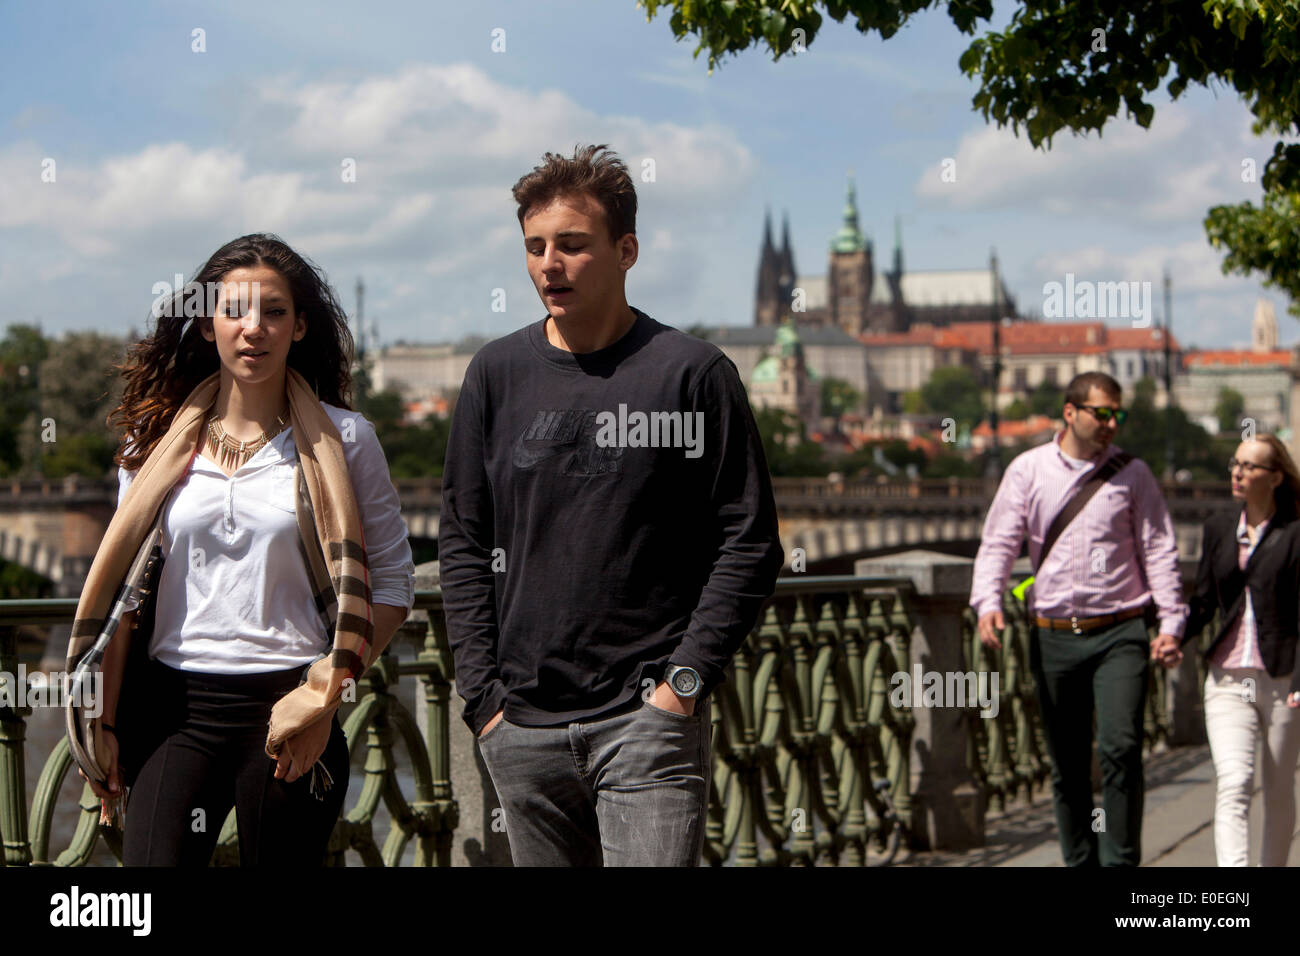 Turisti passeggiata lungo il fiume, sullo sfondo del Castello di Praga Foto Stock